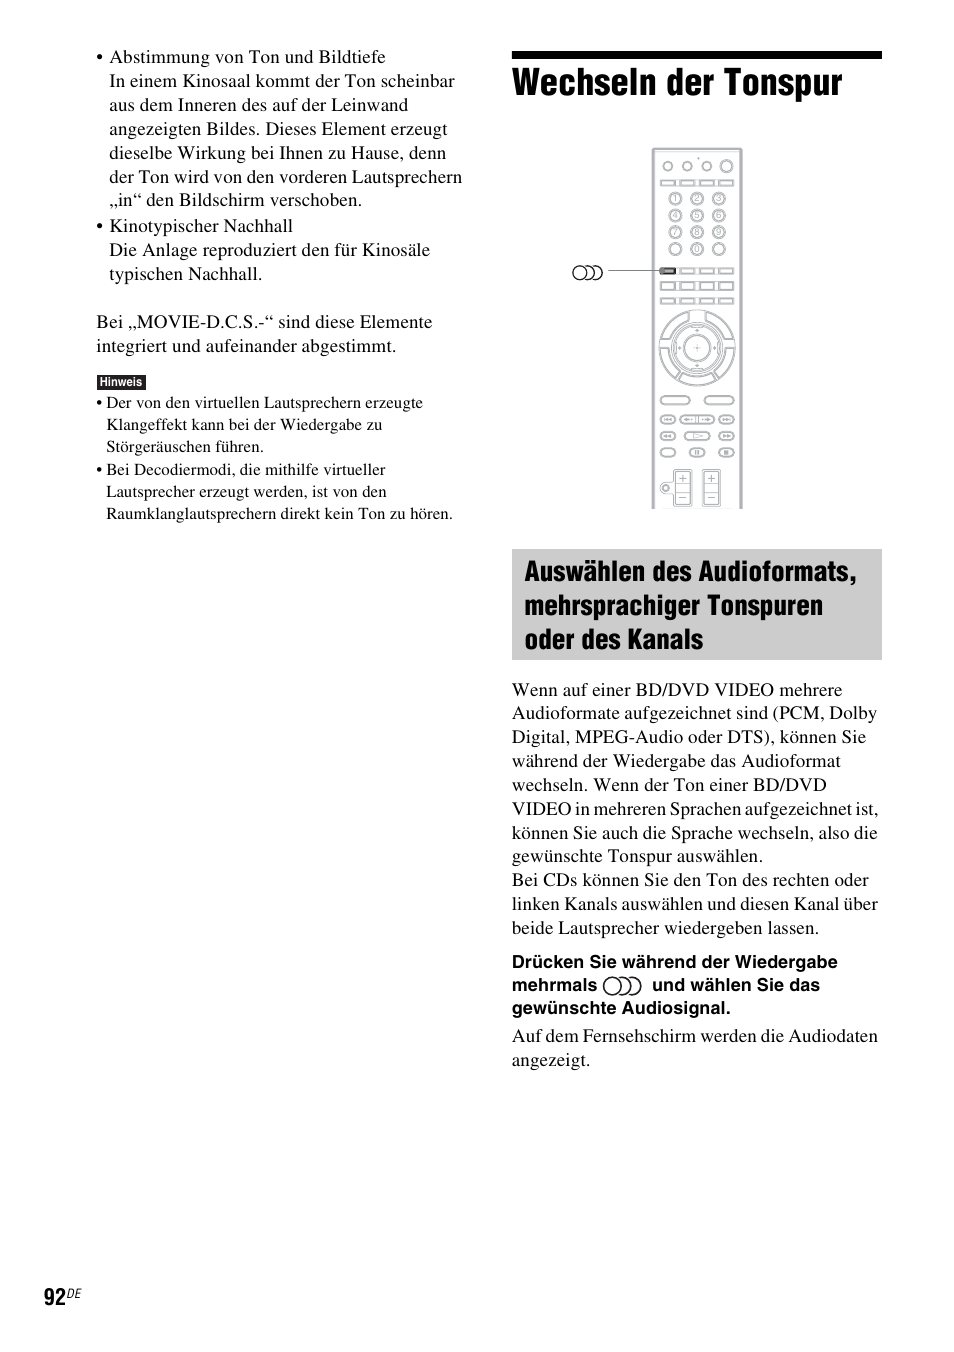 Wechseln der tonspur | Sony BDV-IS1000 Benutzerhandbuch | Seite 252 / 323